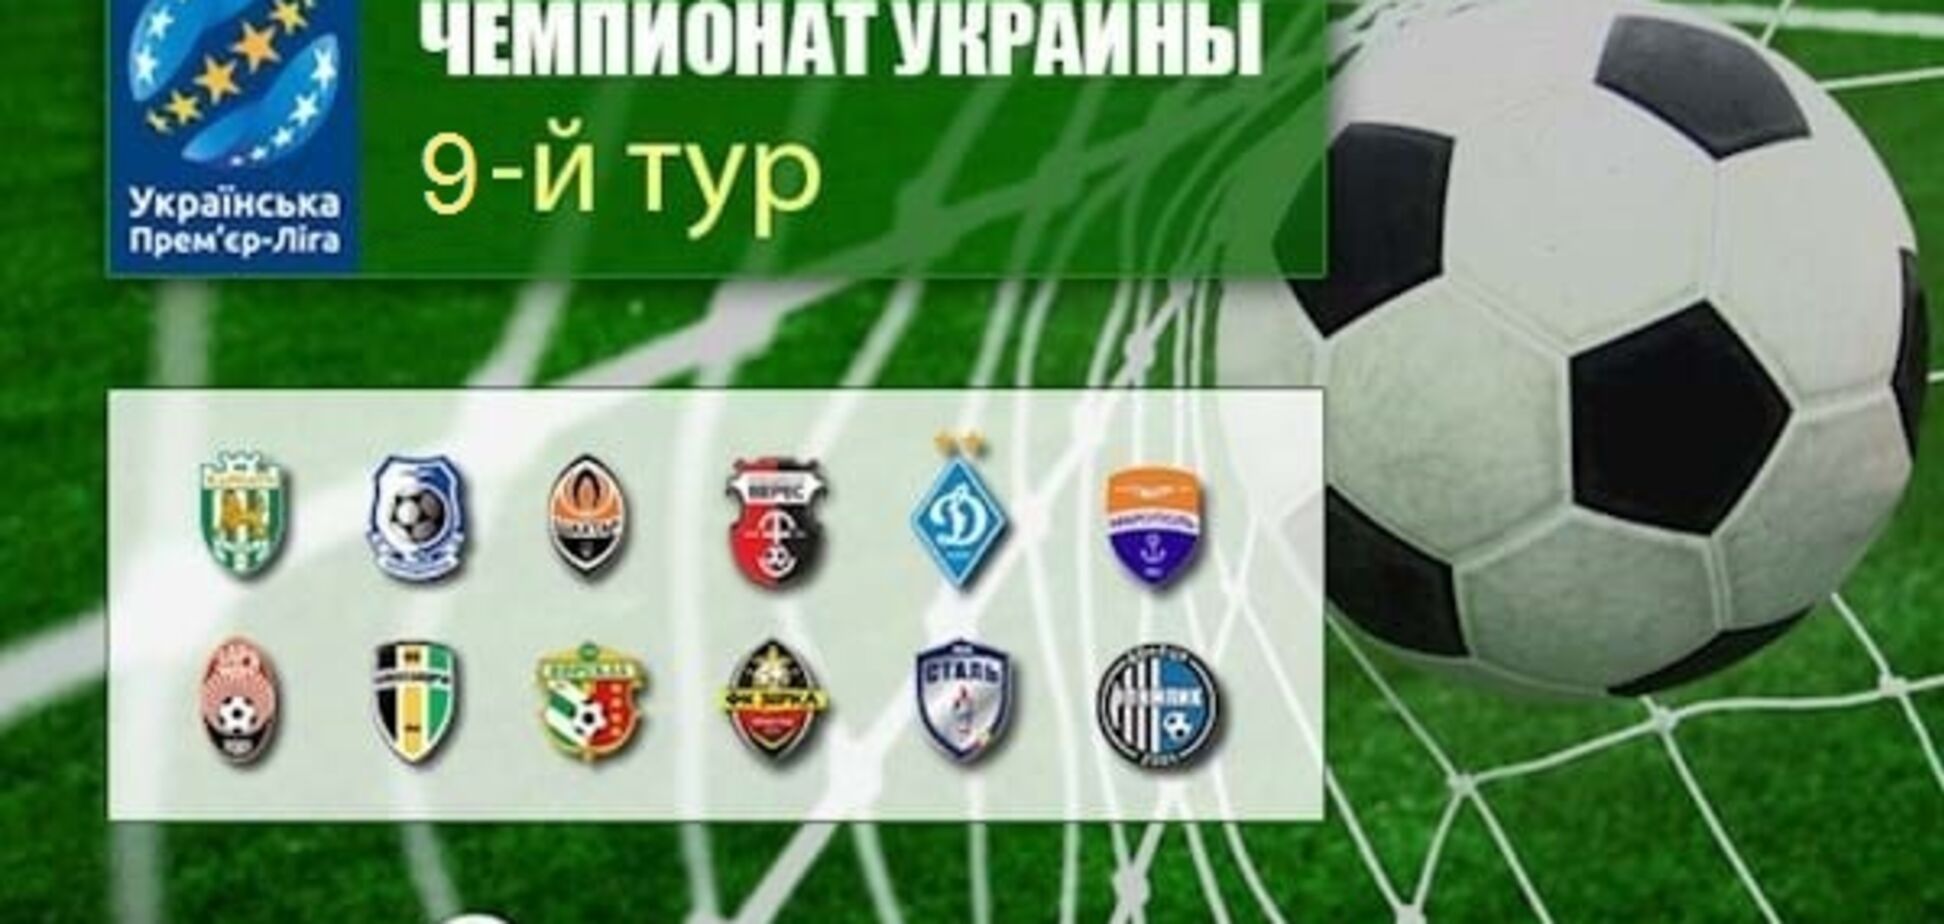 9-й тур чемпіонату України з футболу: результати, огляди, турнірна таблиця